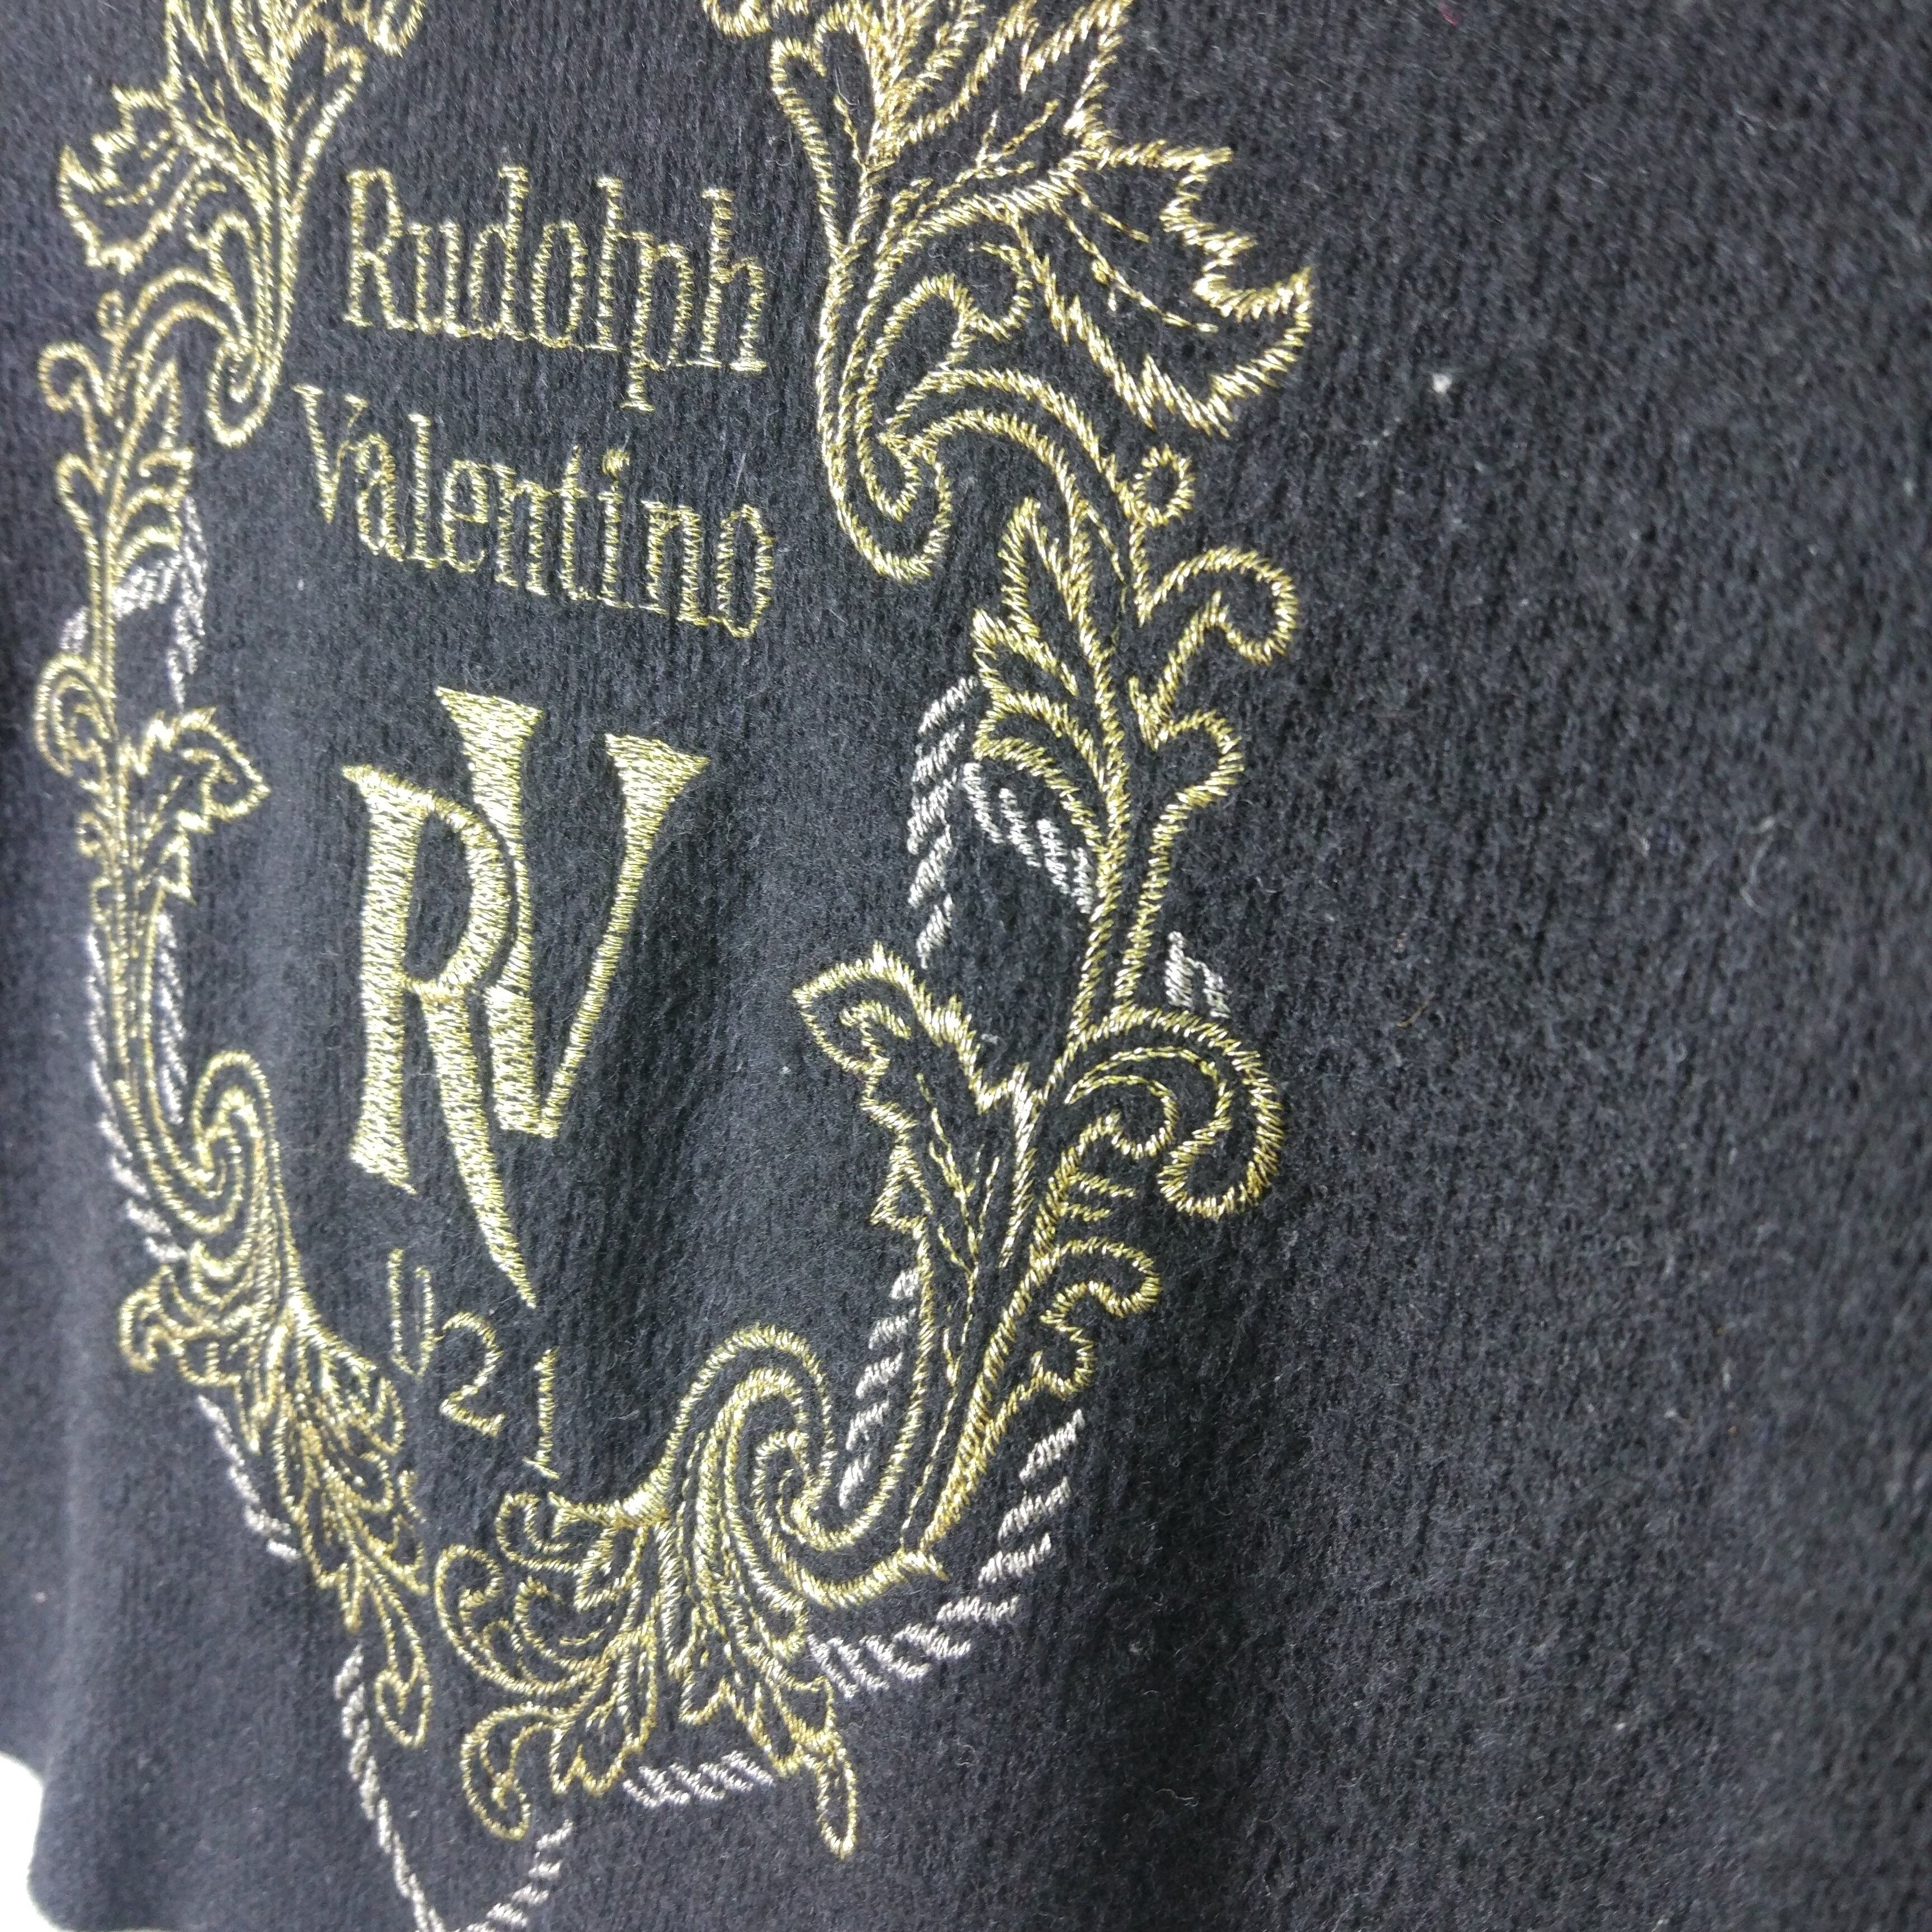 Rudolph Valentino Embroidered Big Logo Turtle Neck Pullover Jumper Sweatshirt - 3